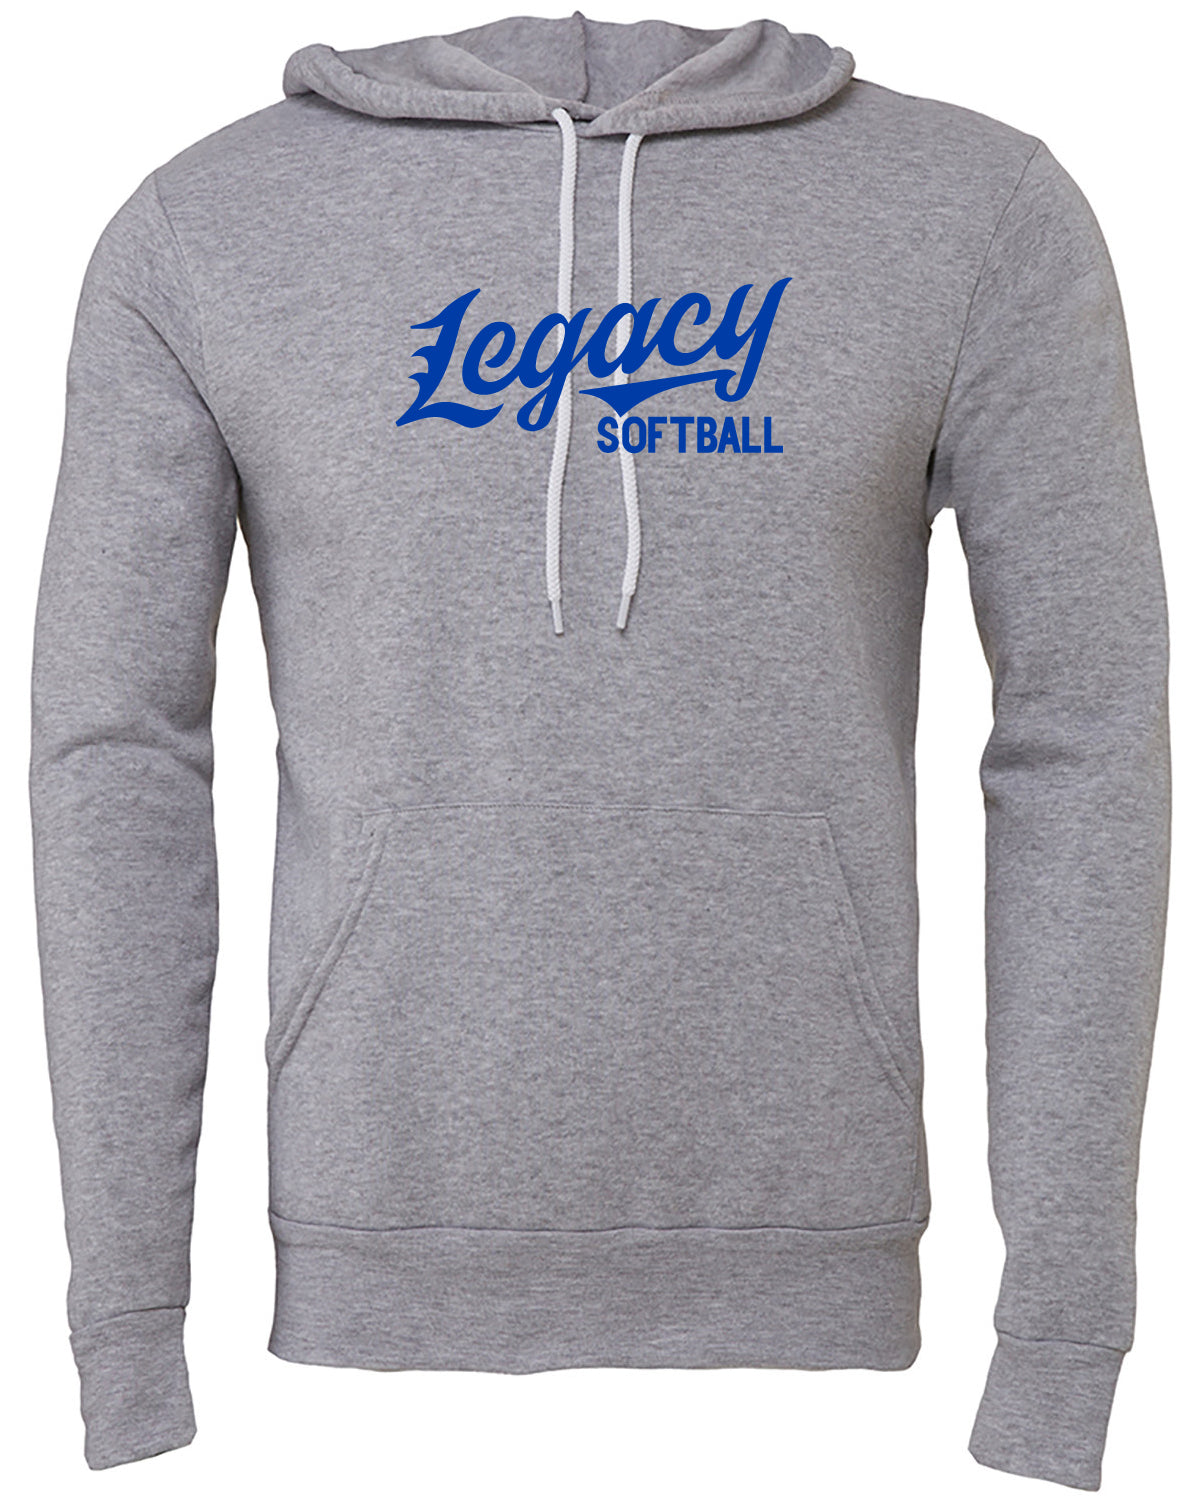 legacy softball hoodie